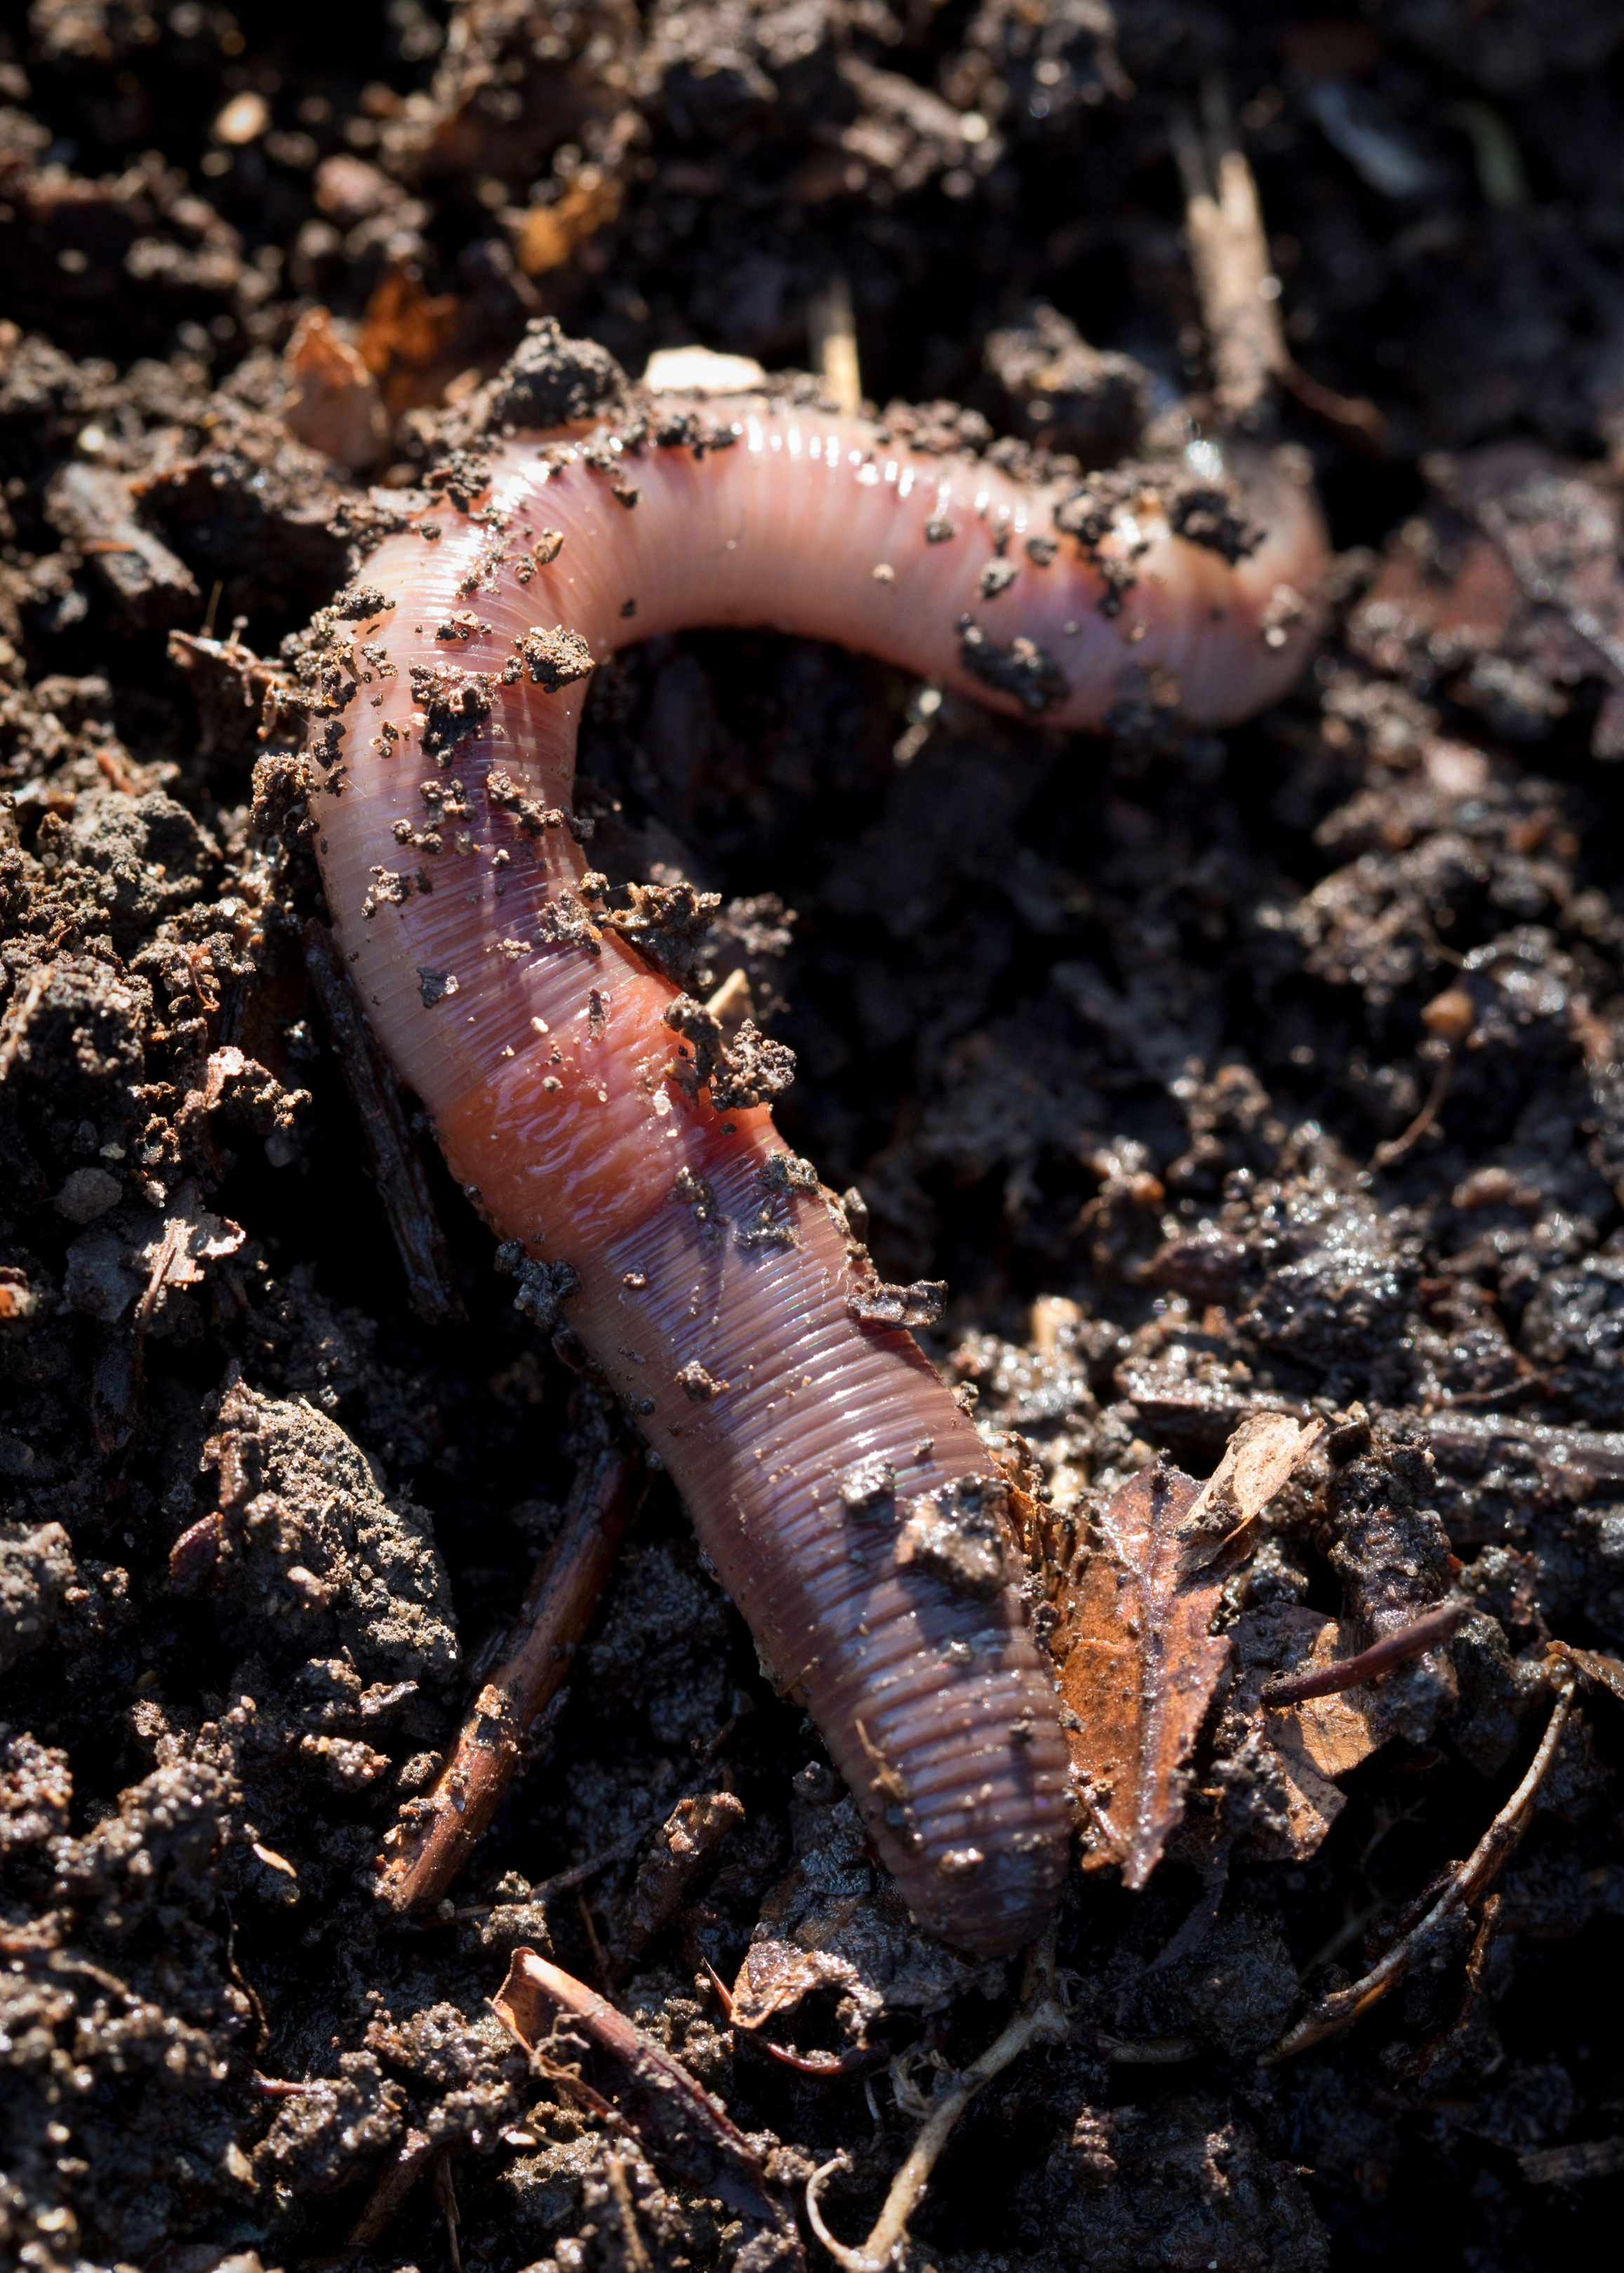 An earthworm (Alamy/PA)